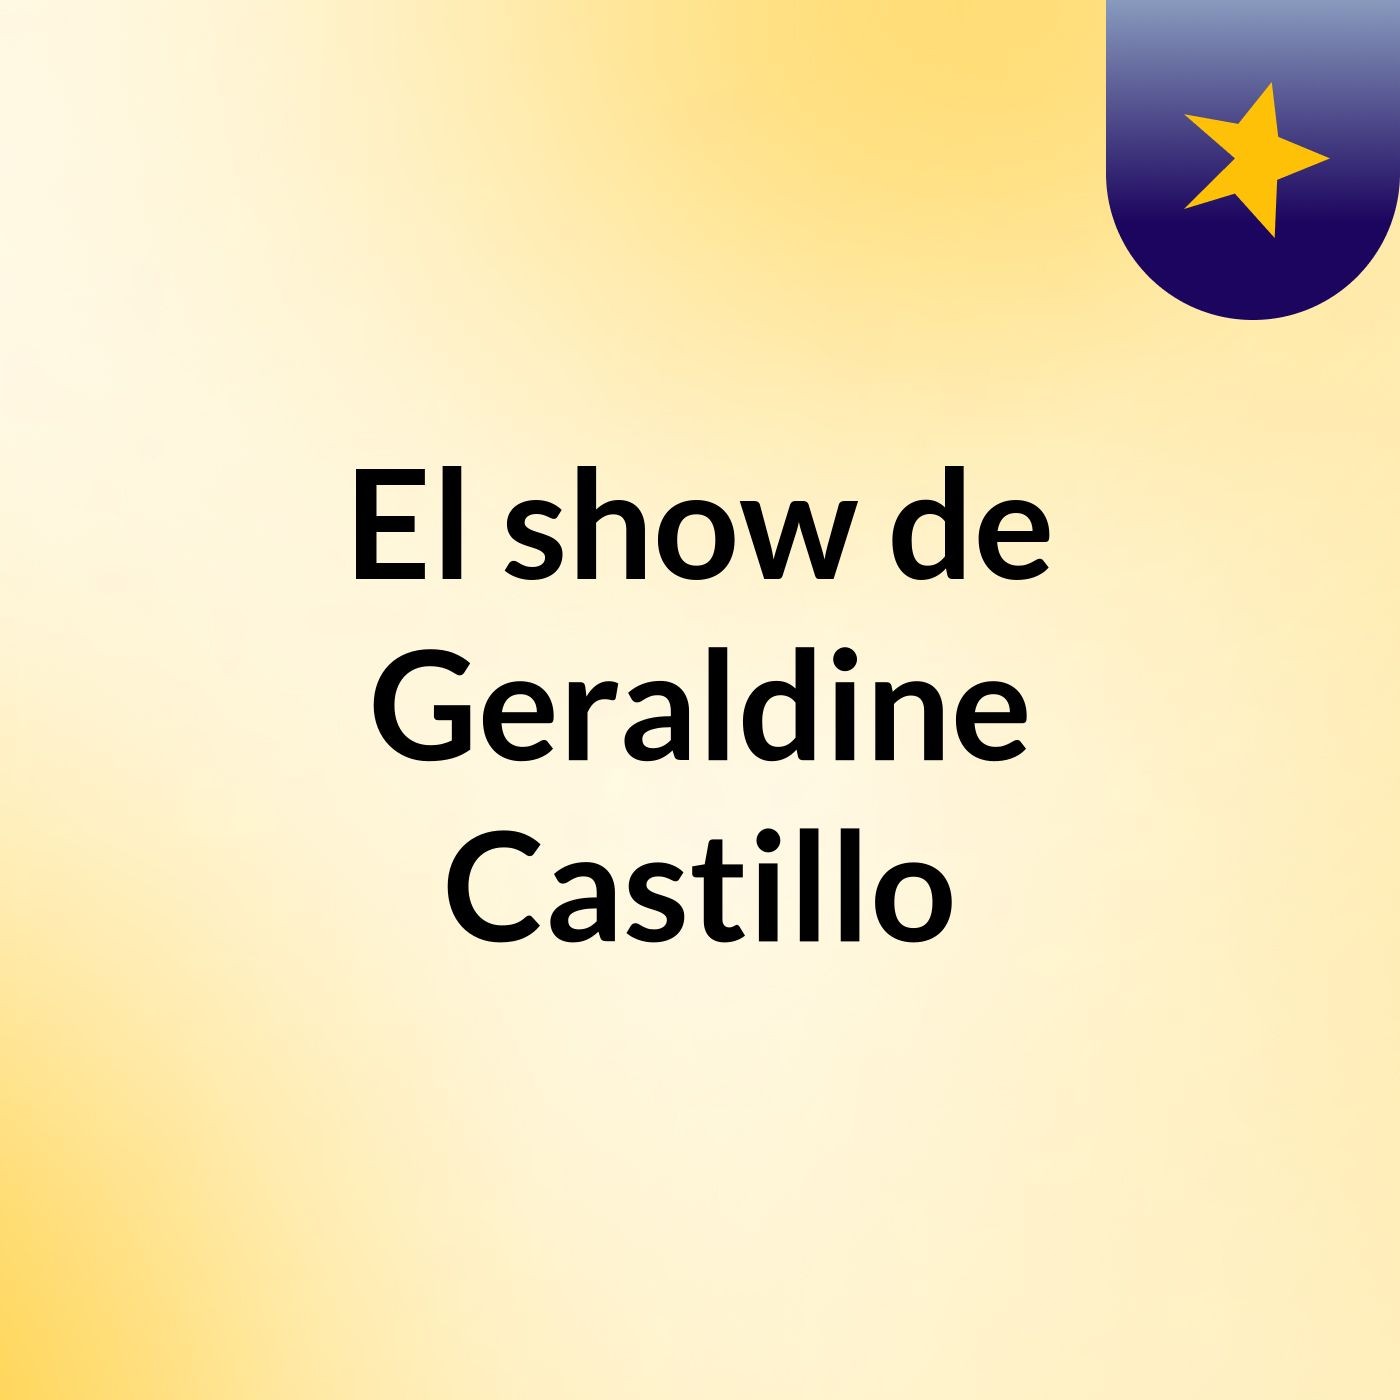 El show de Geraldine Castillo